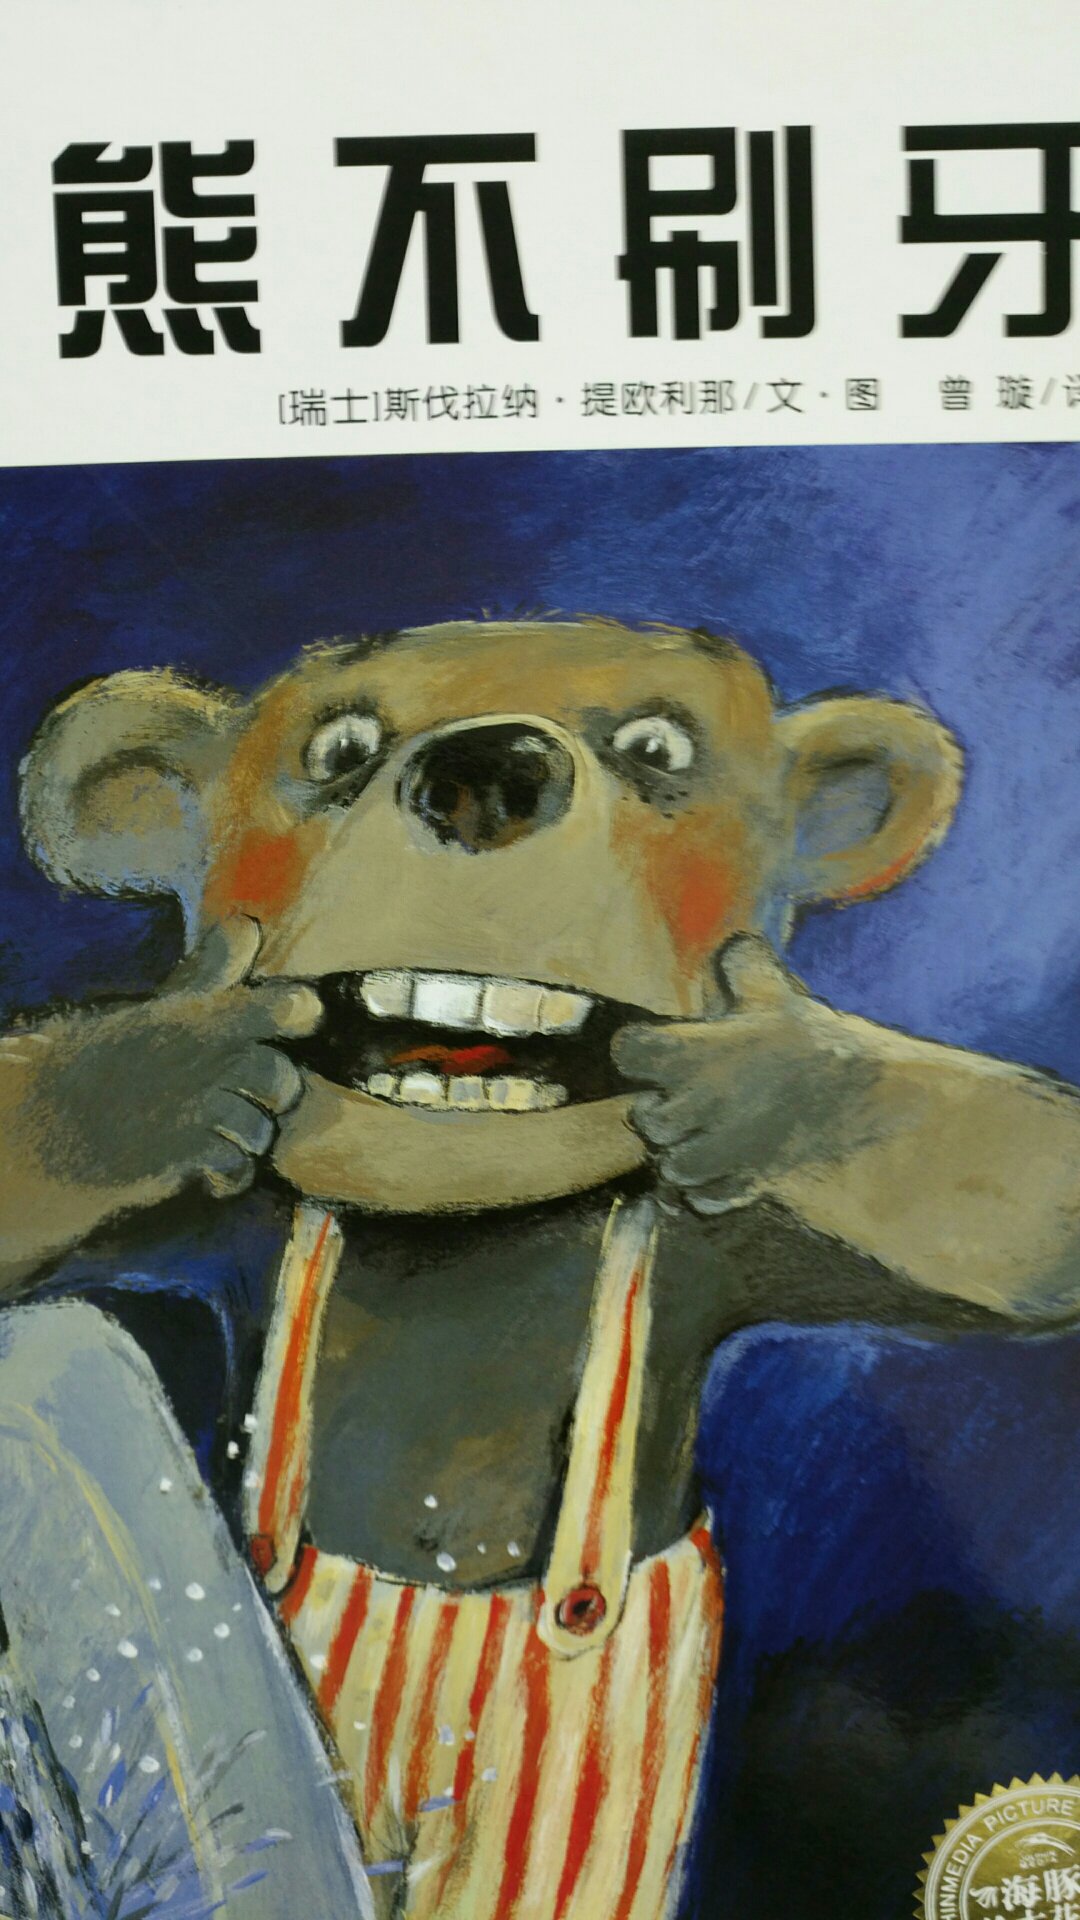 小熊不刷牙这本书，就是一本讲刷牙重要性的书。因为小熊不刷牙，失去了所有牙齿，他后来慢慢领悟到牙齿的重要性。牙齿又回到他的嘴里。这样中规中距的劝导式的绘本。却有着充满想象力，善于营造氛围的图画，这本书的魔法在于它的功能性。